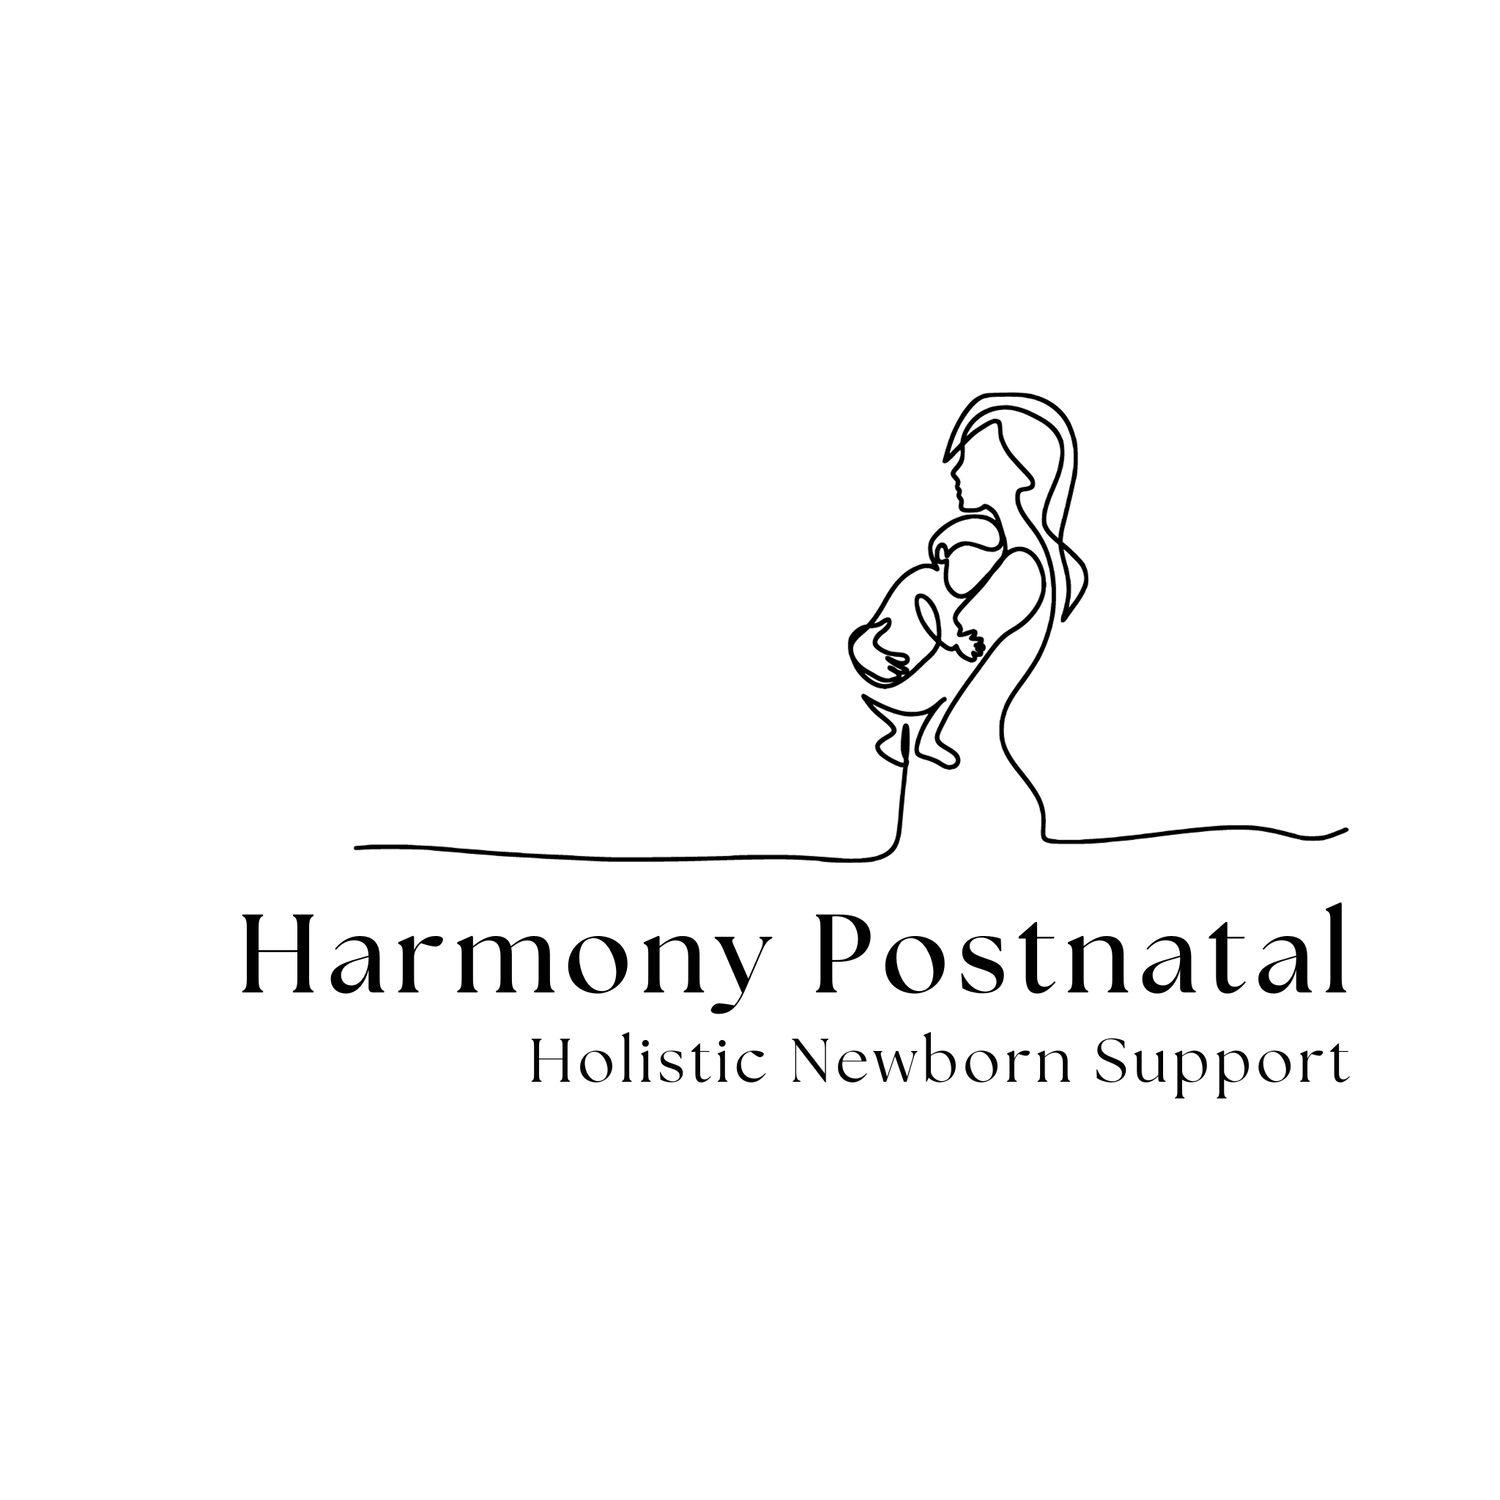 Harmony Postnatal